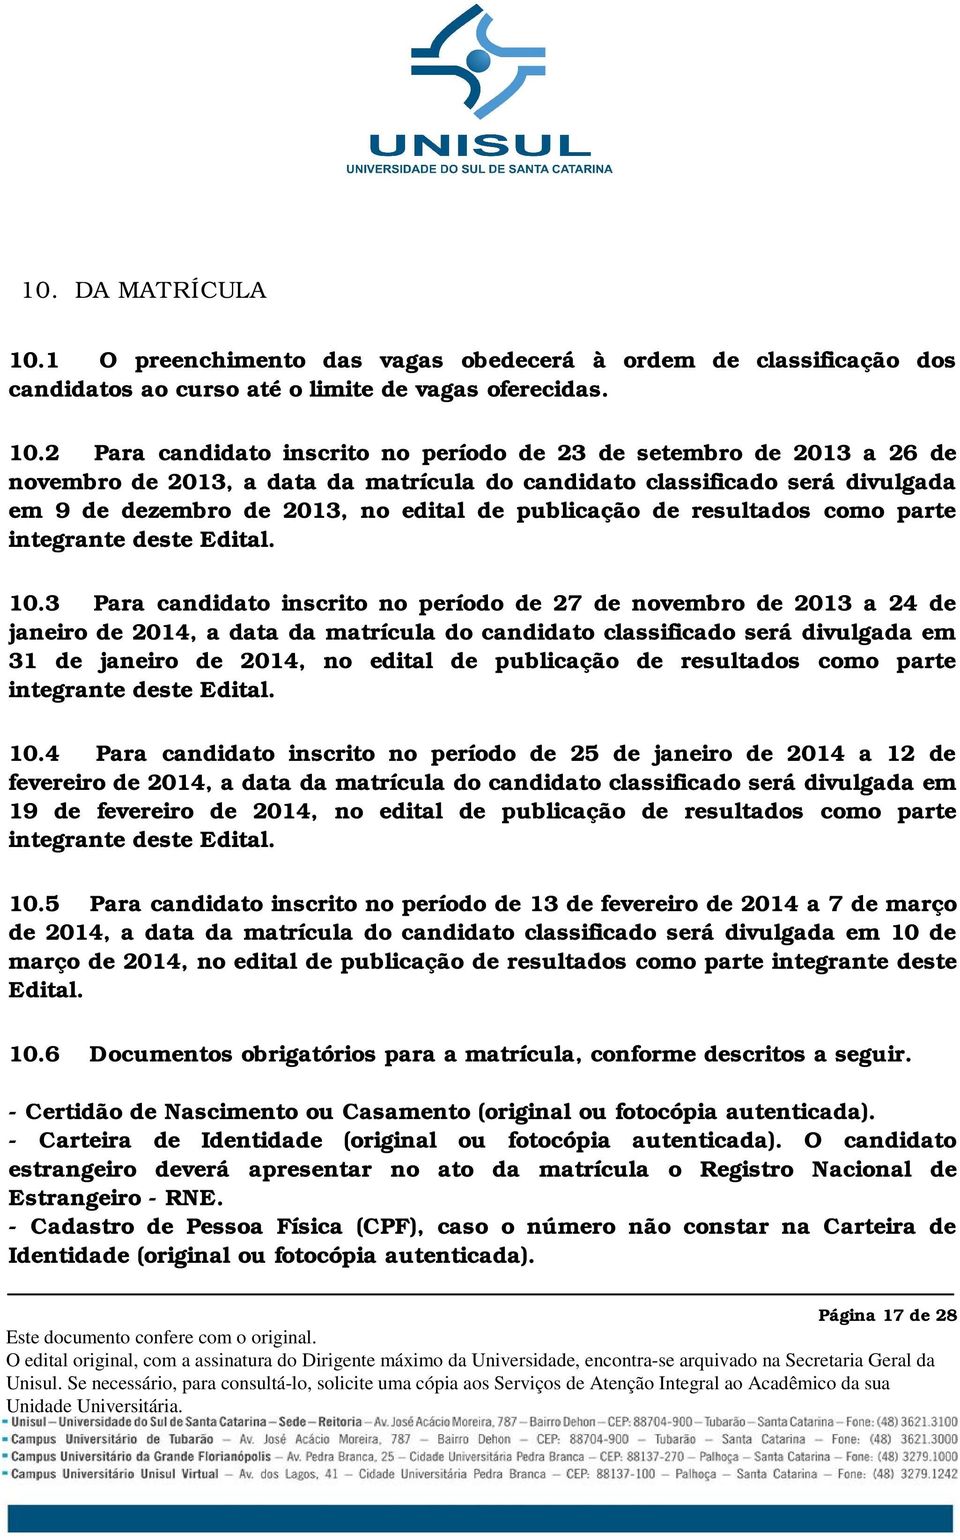 2 Para candidato inscrito no período de 23 de setembro de 2013 a 26 de novembro de 2013, a data da matrícula do candidato classificado será divulgada em 9 de dezembro de 2013, no edital de publicação